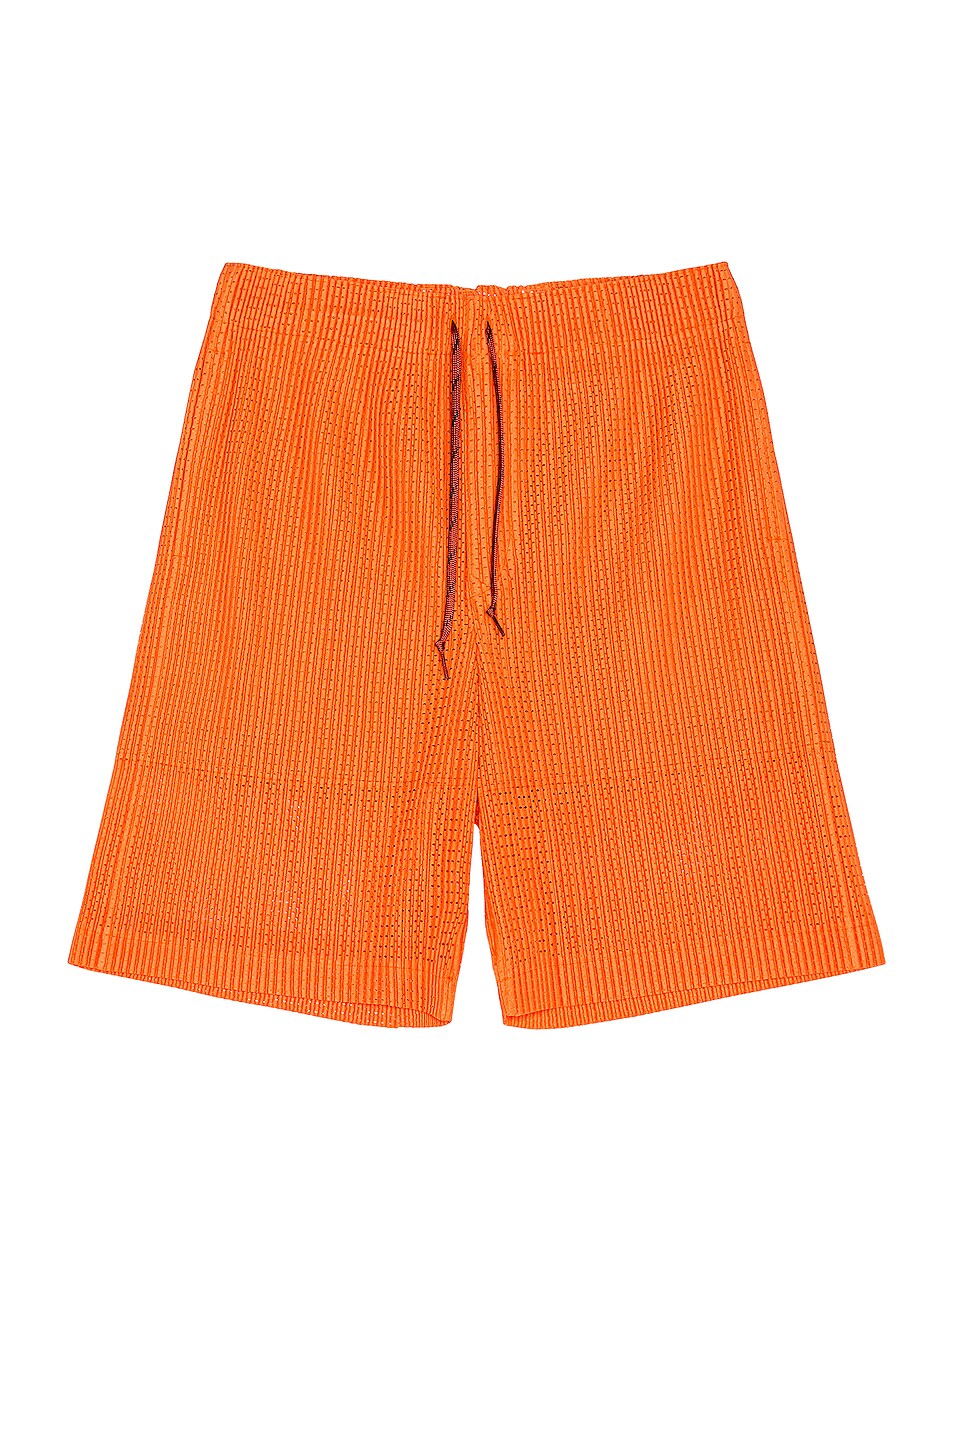 Image 1 of Homme Plisse Issey Miyake Shorts in Orange